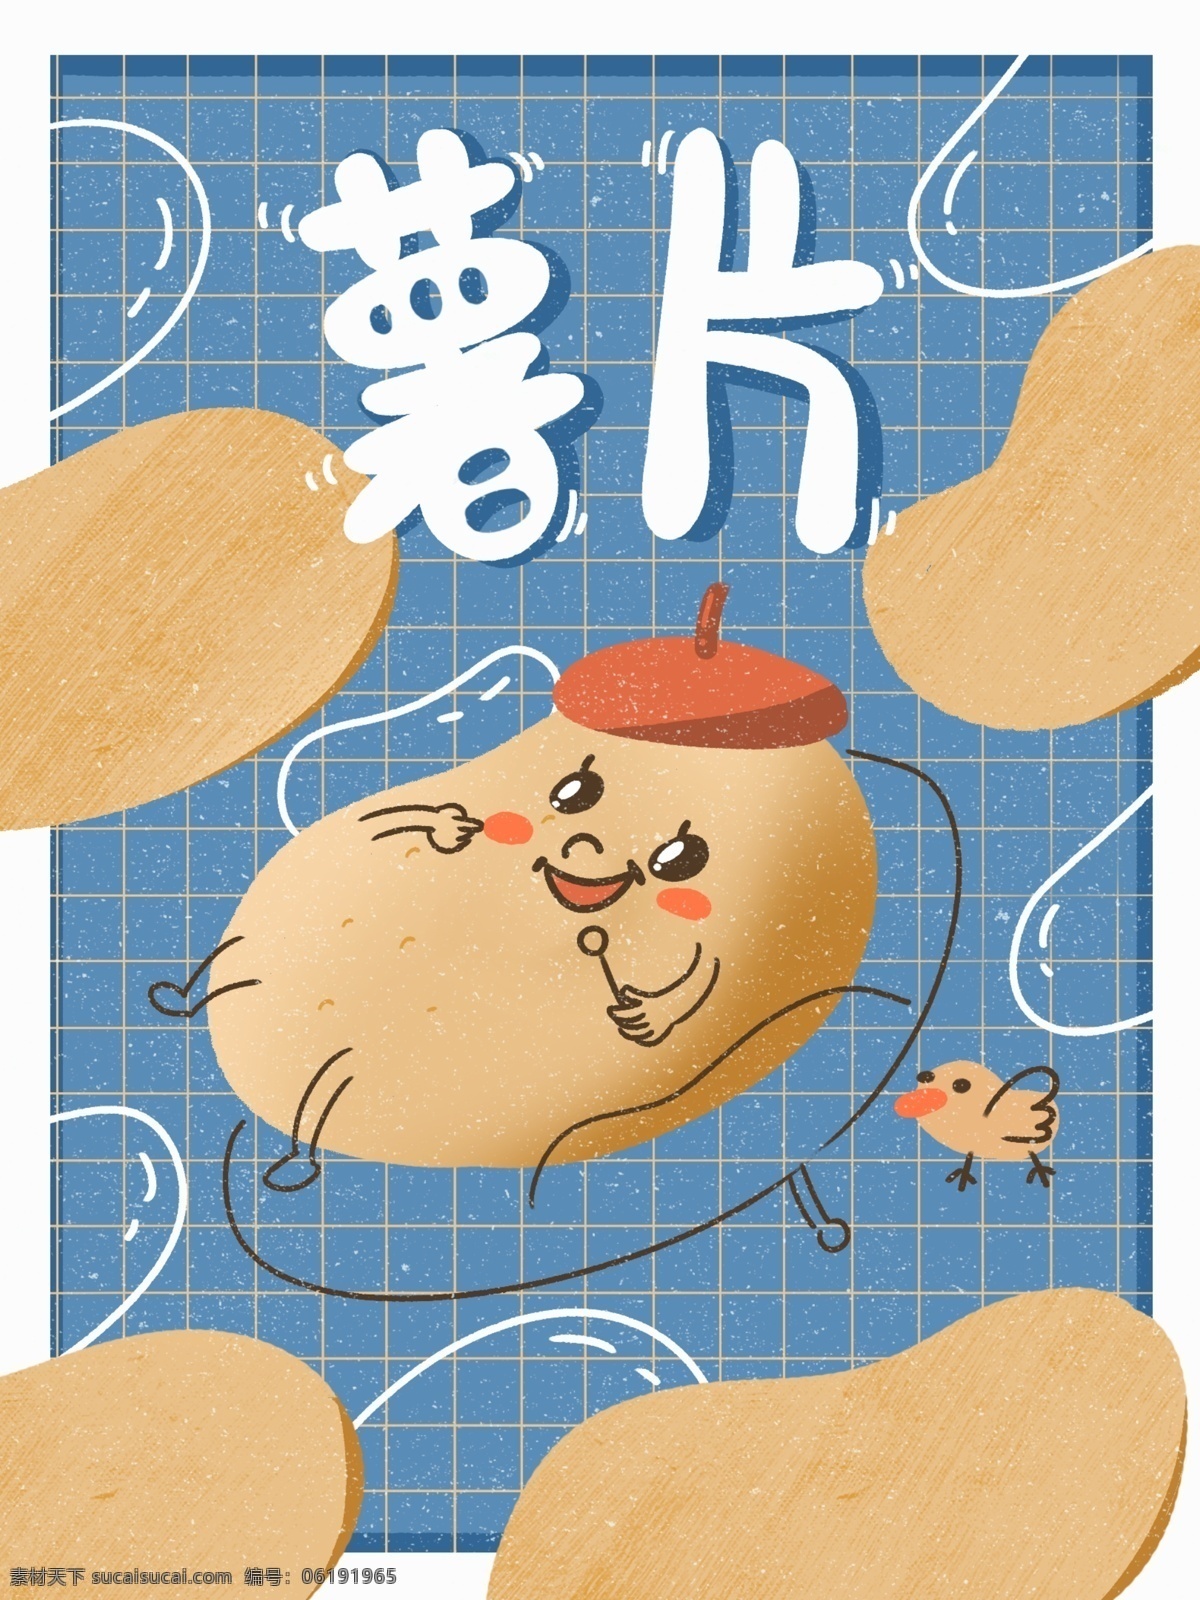 薯片 膨化食品 土豆 创意 零食 可爱 卡通 插画 包装 马铃薯 治愈 小鸟 开心薯片